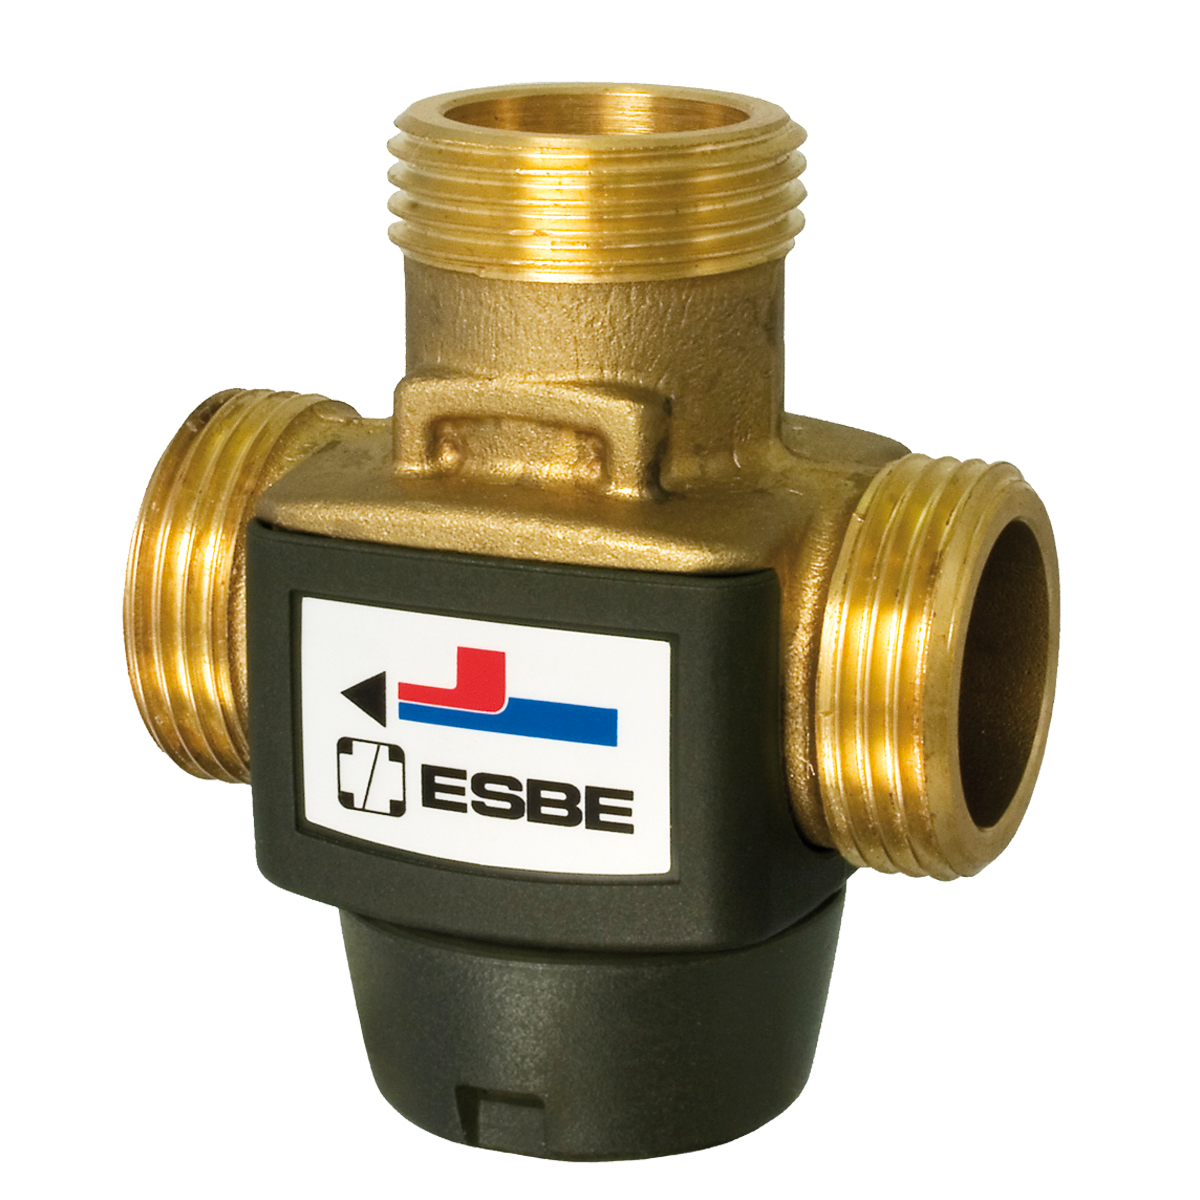 Смеситель термостатический Esbe VTC312 для нагрева воды 55 ° C, 1